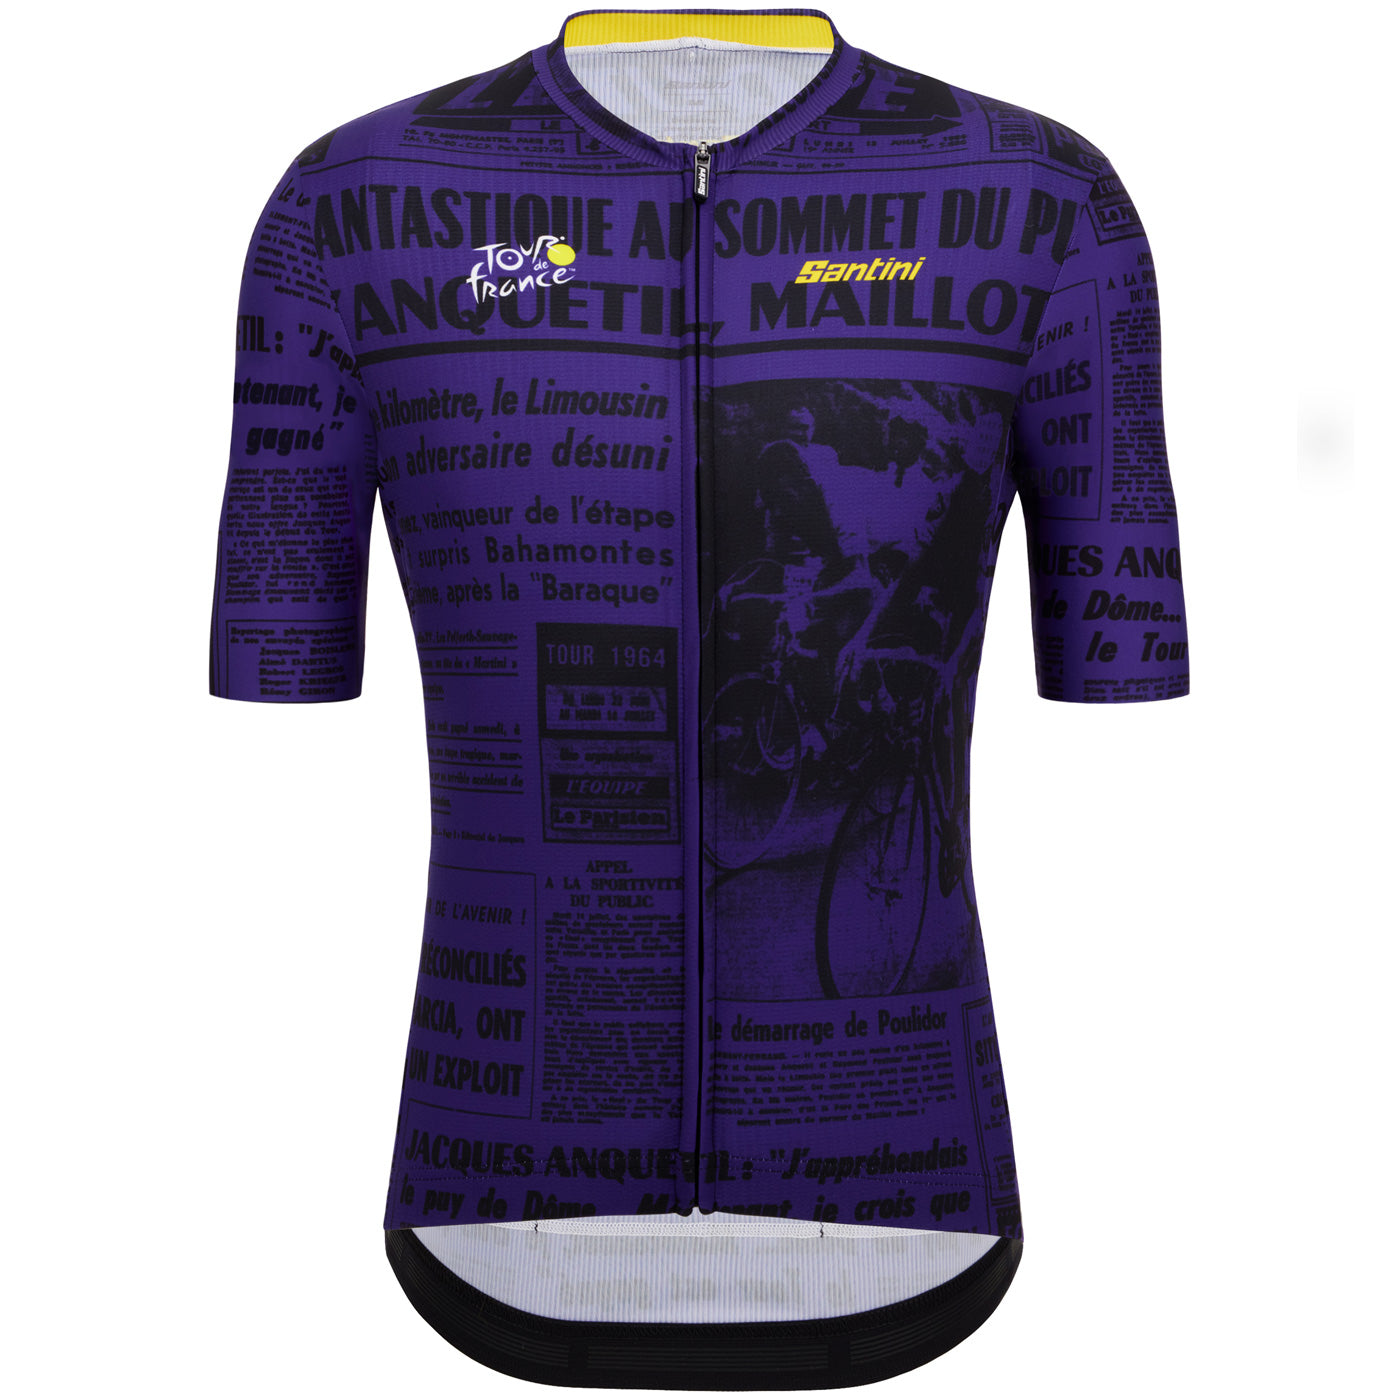 Tour de France trikot - Puy de Dome